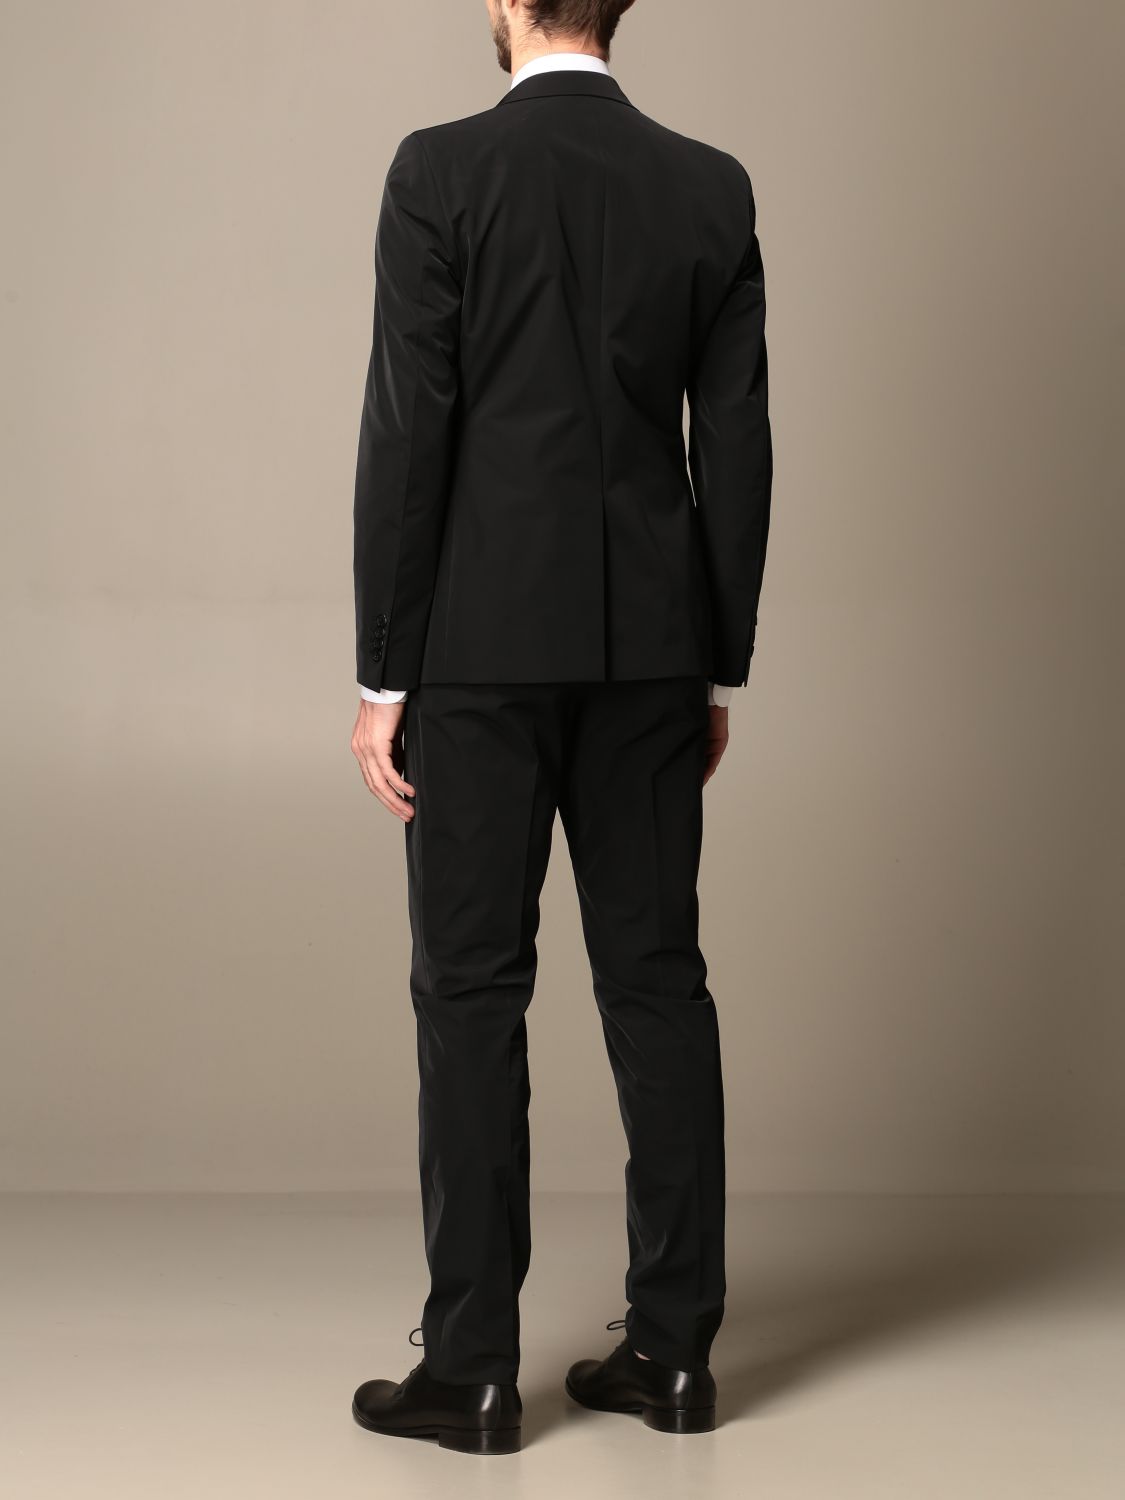 PRADA: Classic single-breasted suit | Suit Prada Men Black | Suit Prada